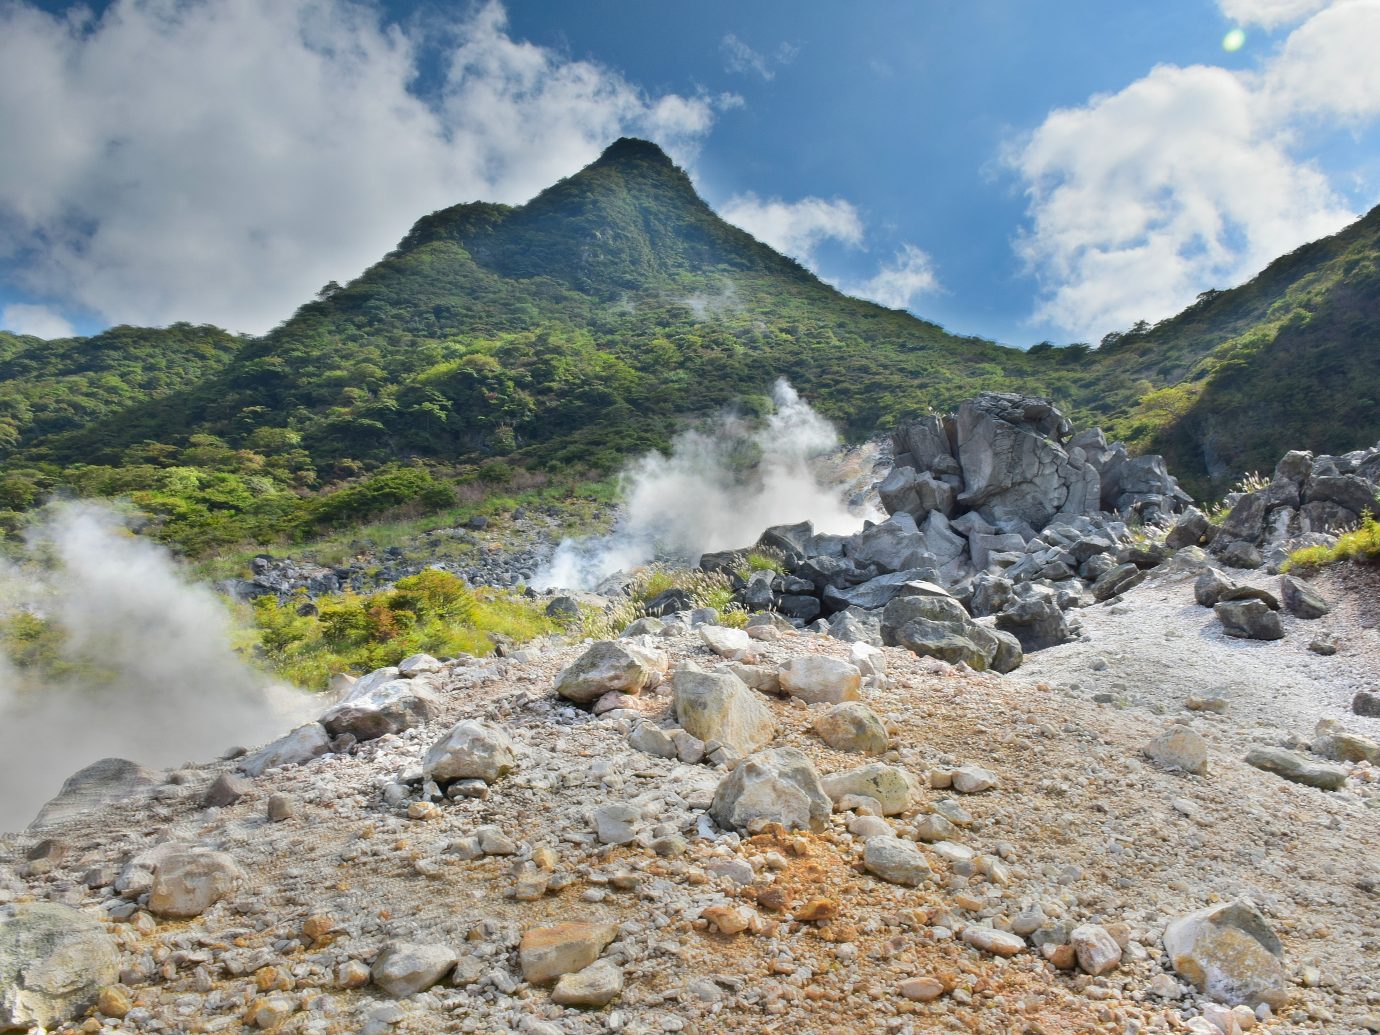 Hot spring vents at Owakudani valley at Hakone in Japan